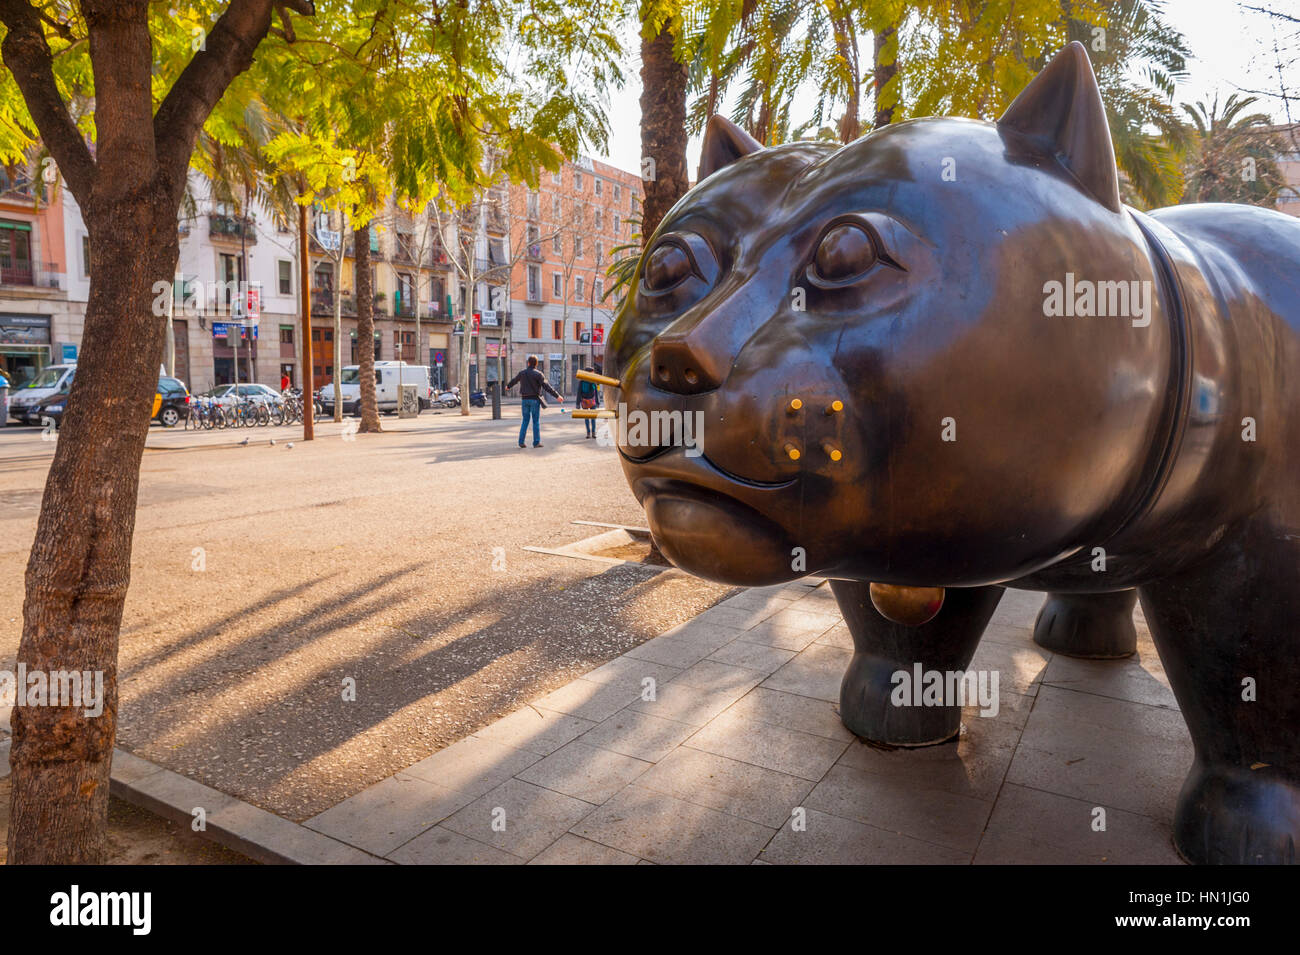 El gat del Raval (El Raval), Gato de Botero en Barcelona España Foto de stock